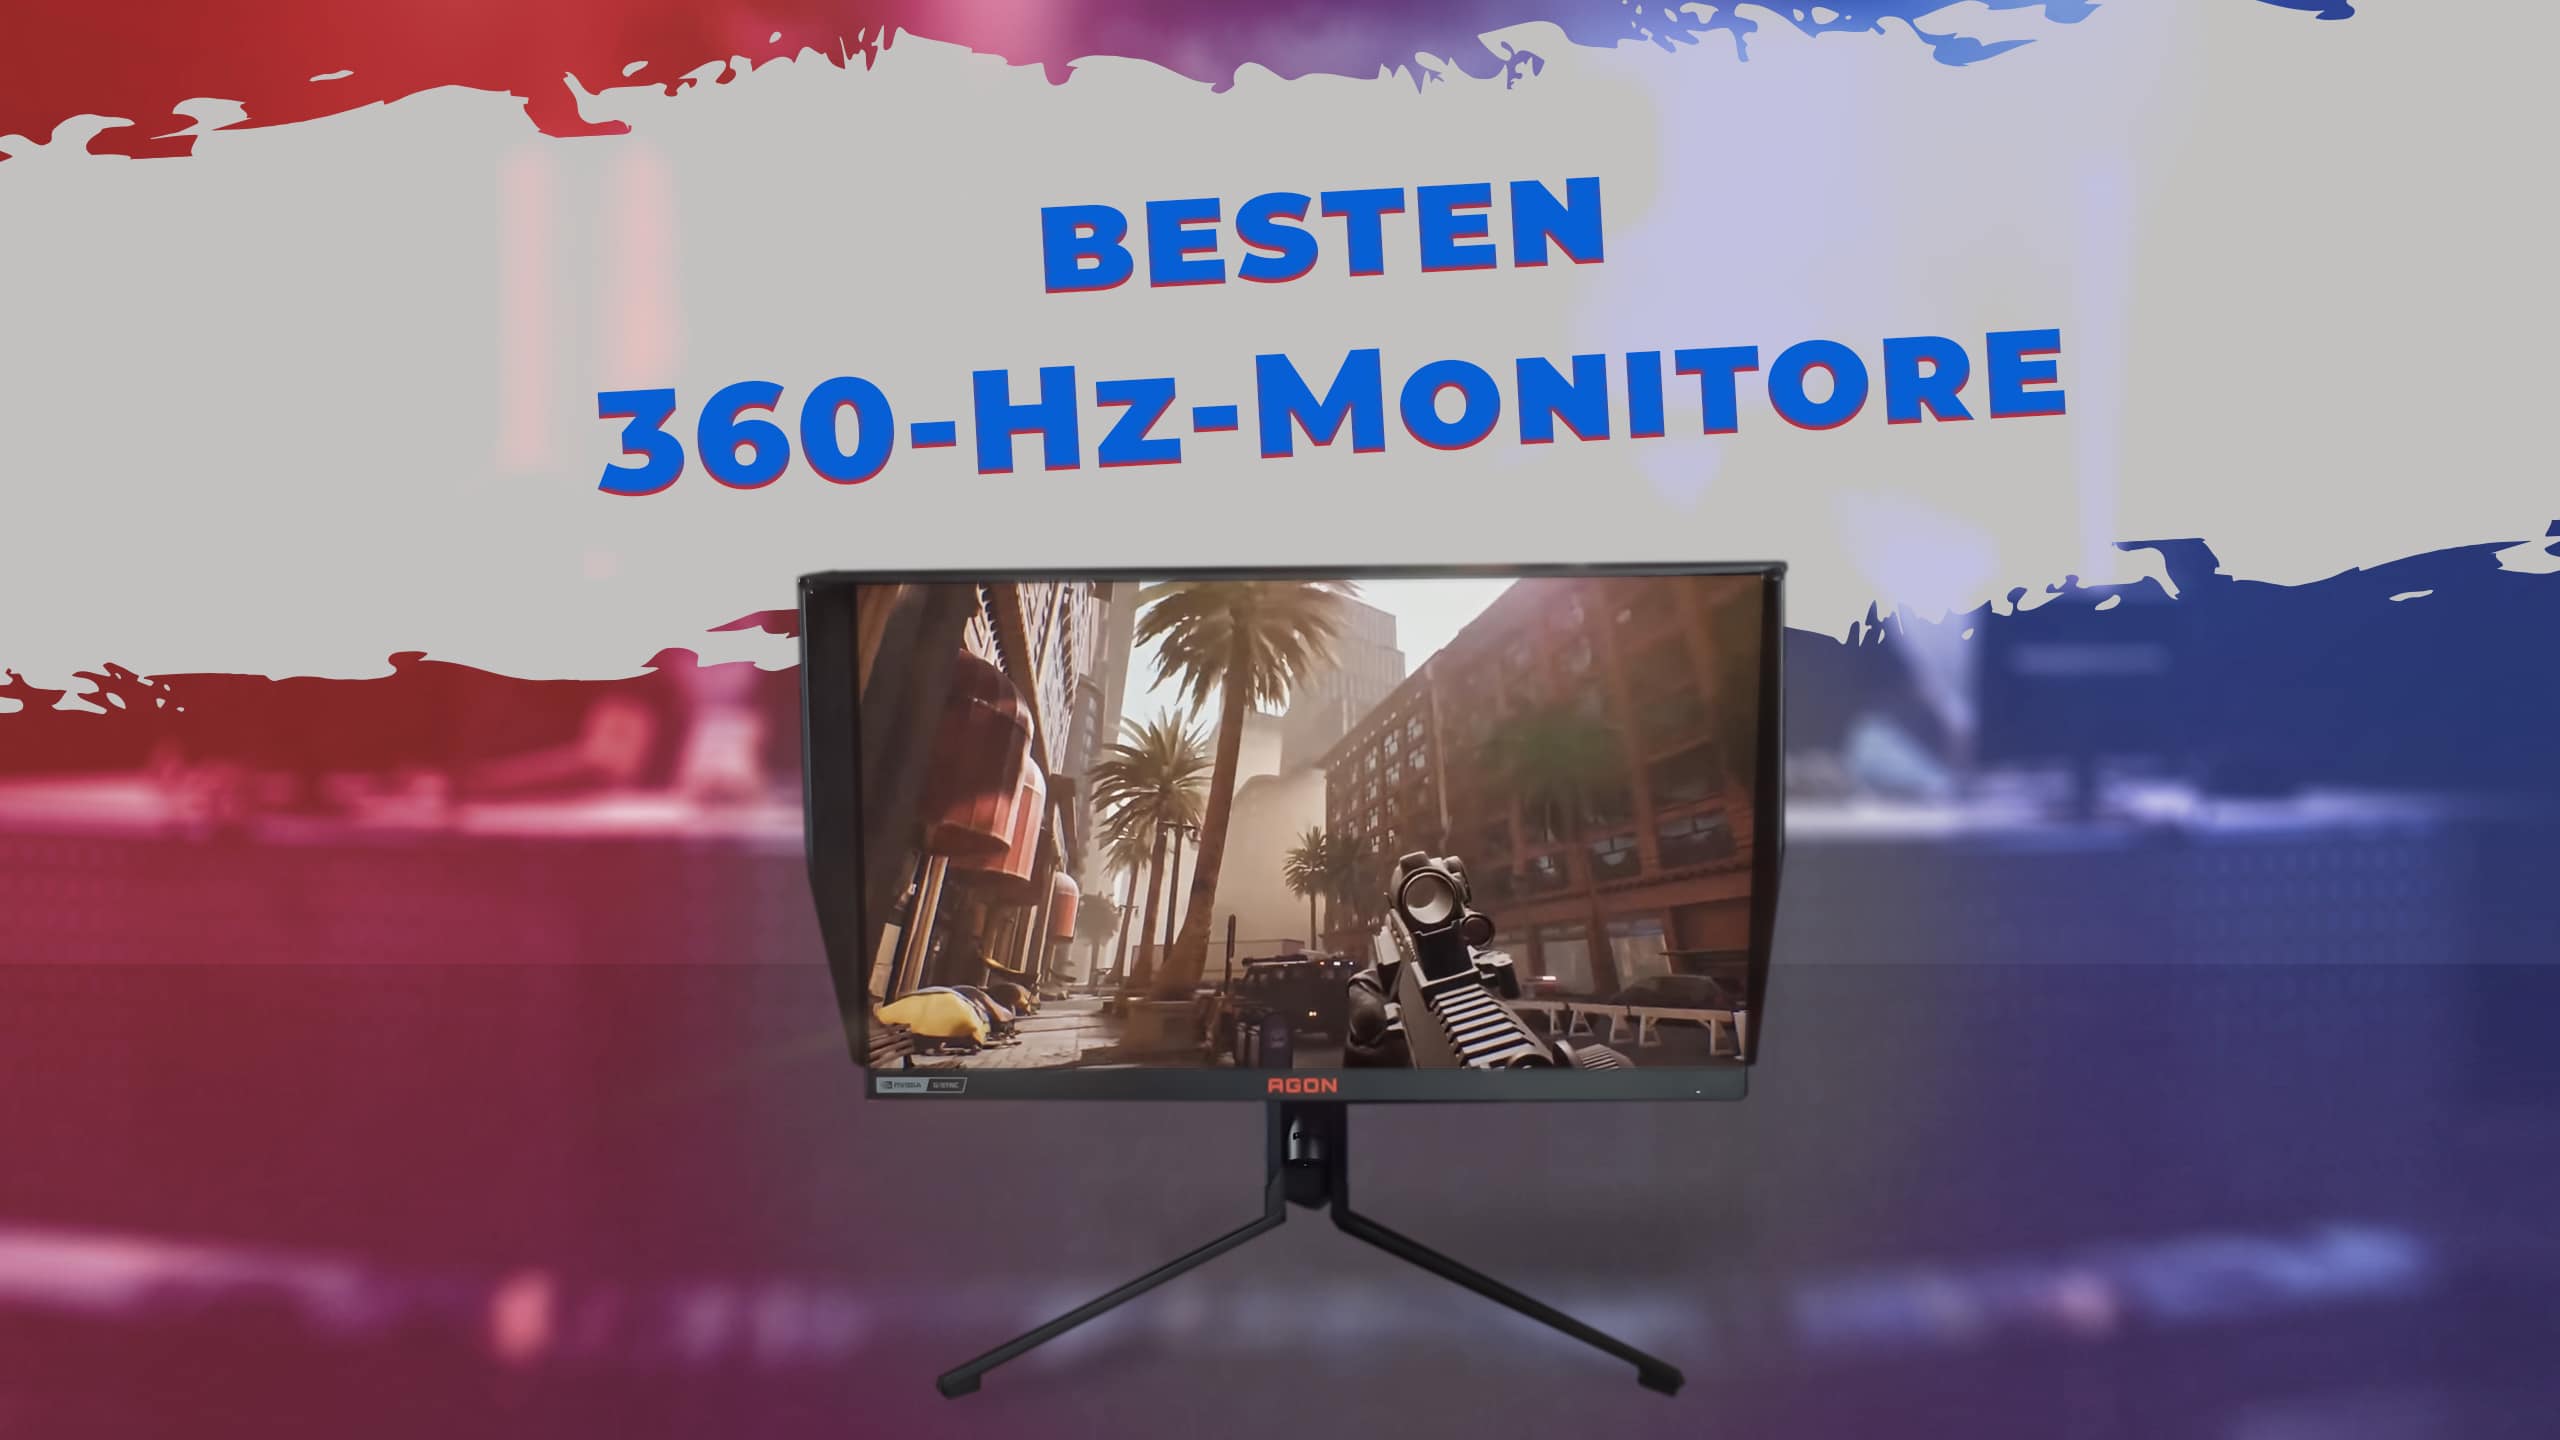 Die besten 360-Hz-Monitore für Gaming